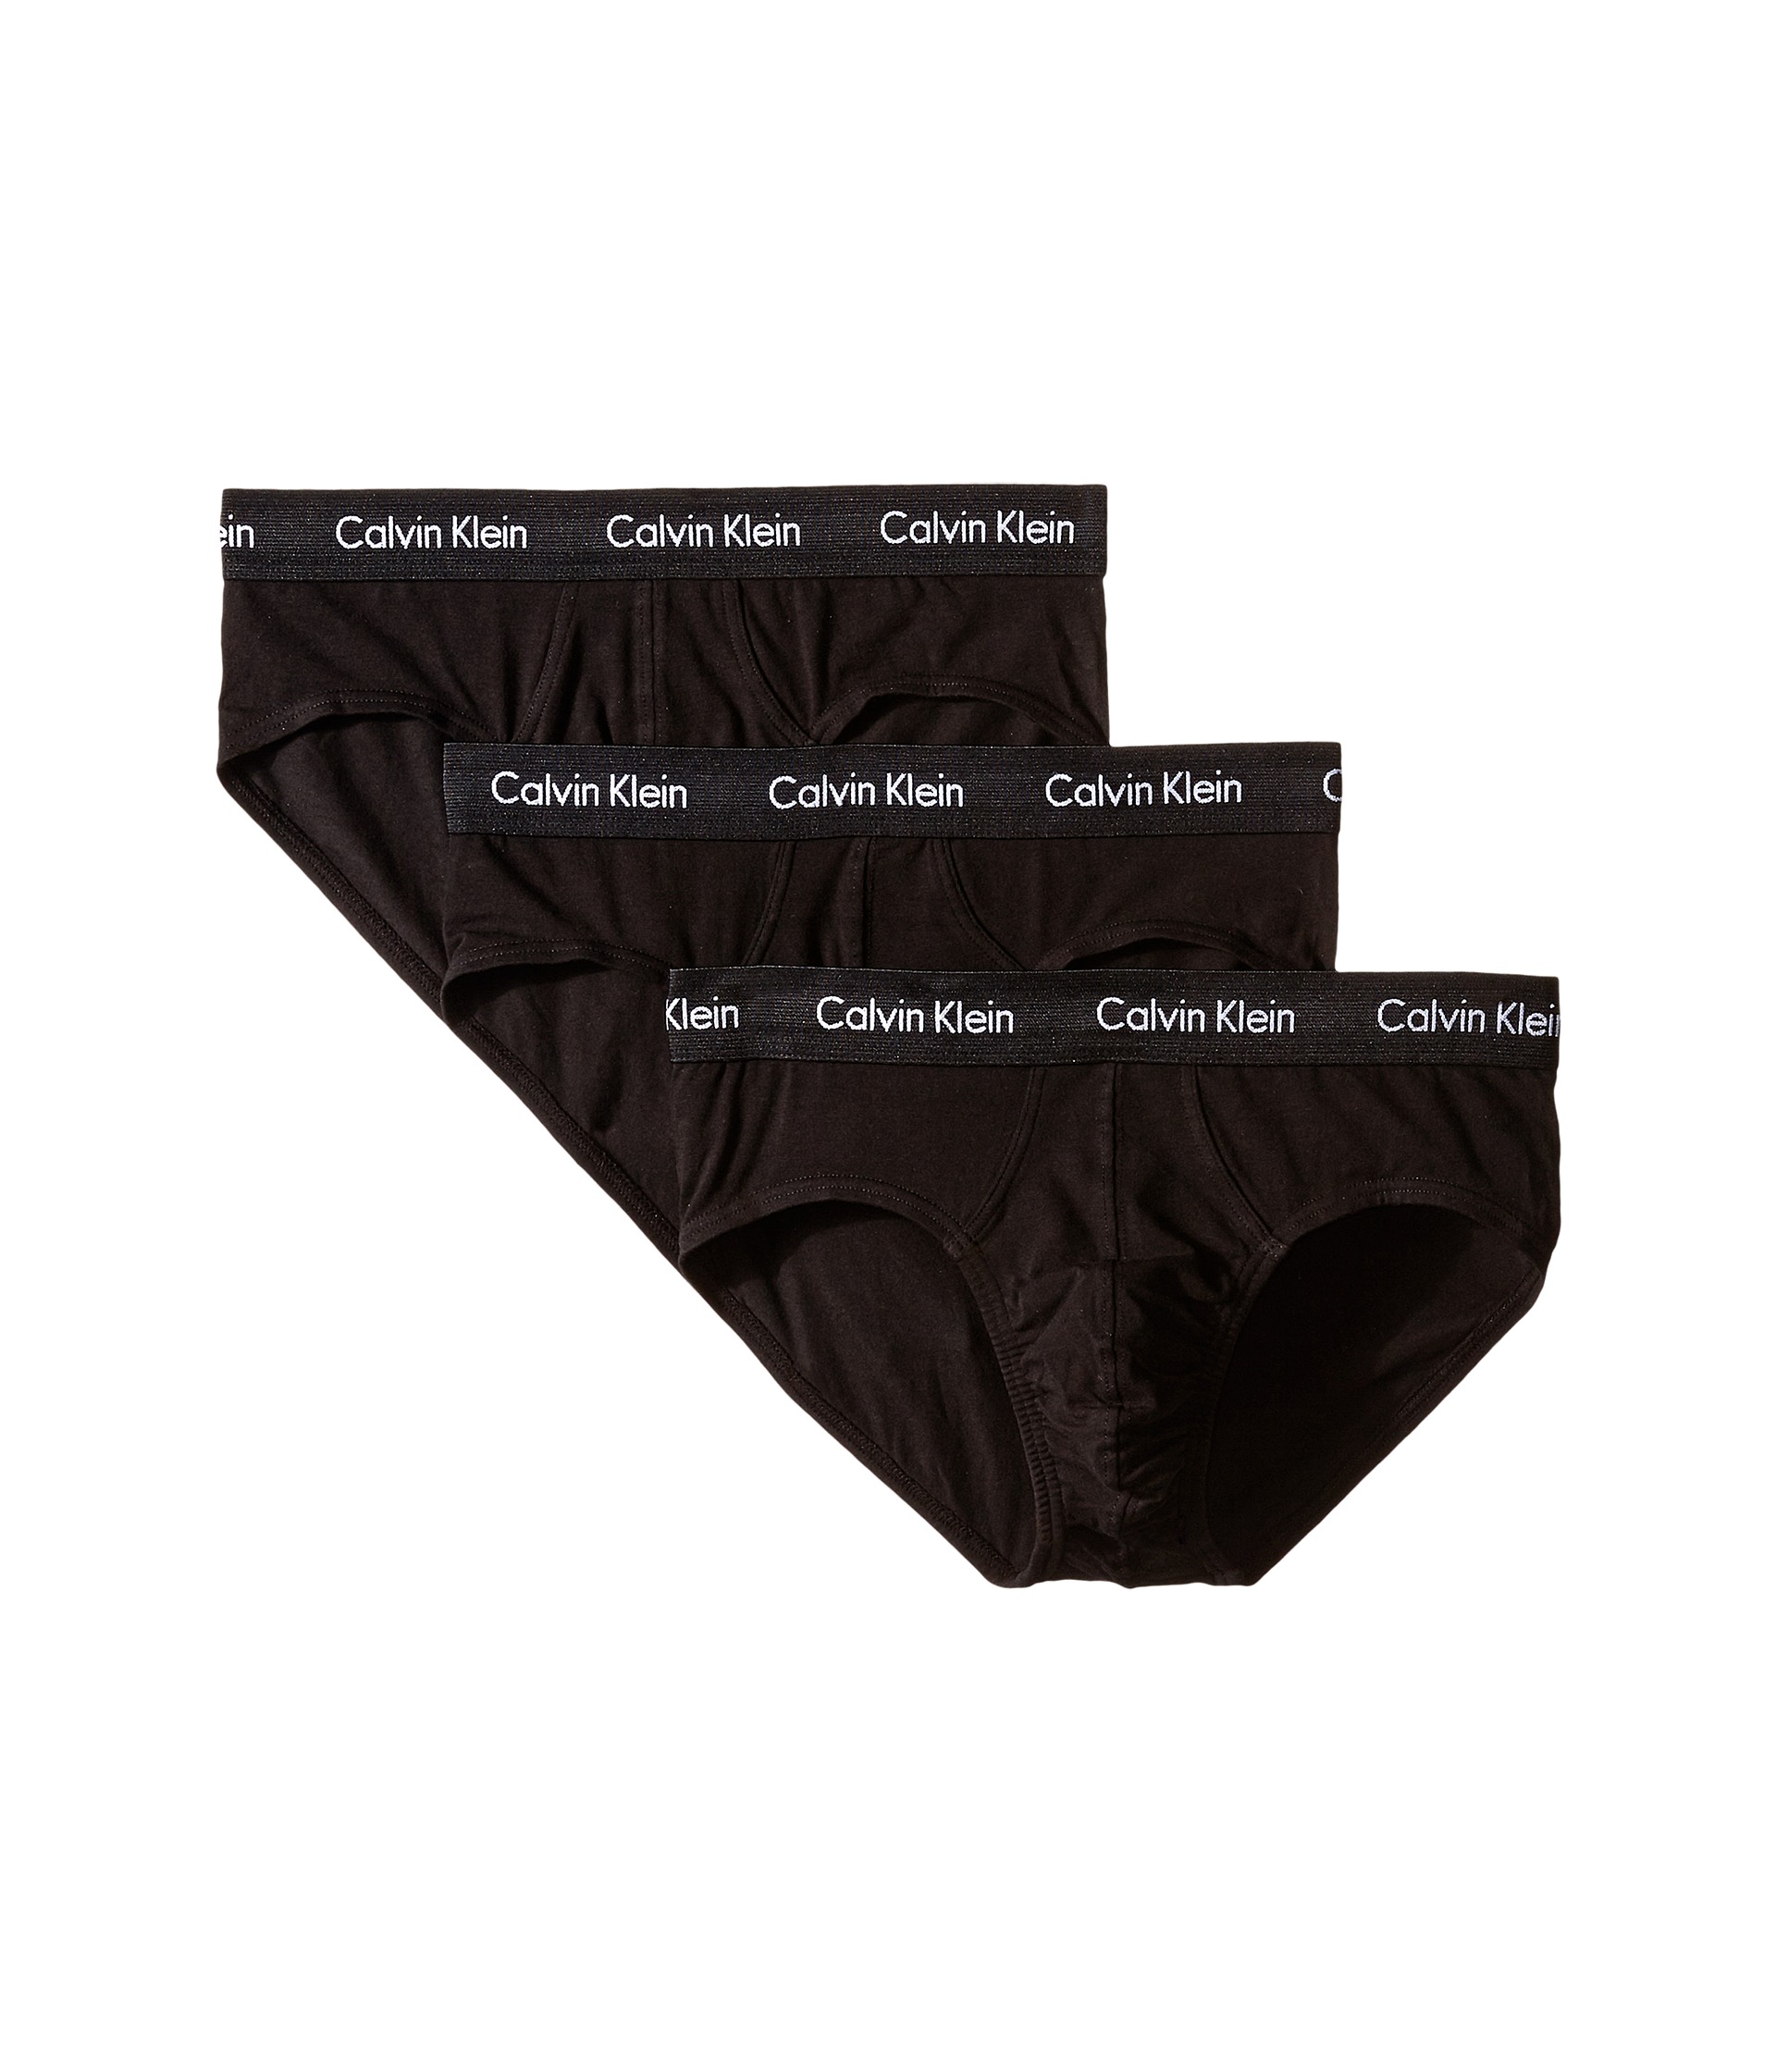 Calvin Klein Underwear Cotton Stretch Hip Brief 3-Pack at Zappos.com